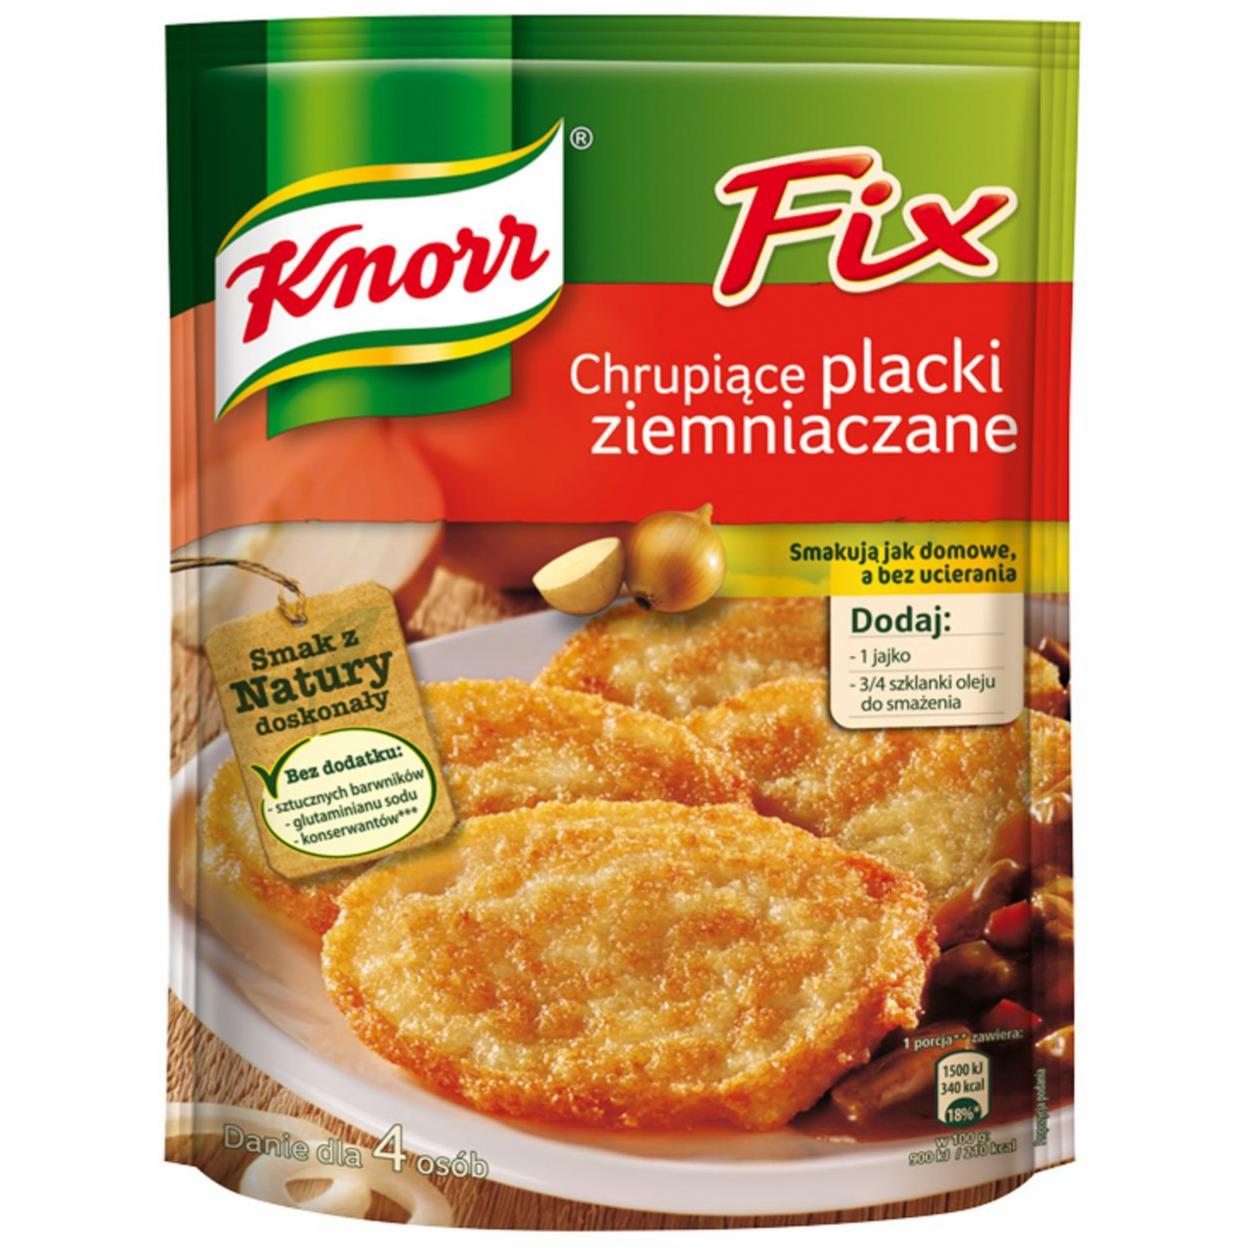 Zdjęcia - Knorr Fix chrupiące placki ziemniaczane 200 g